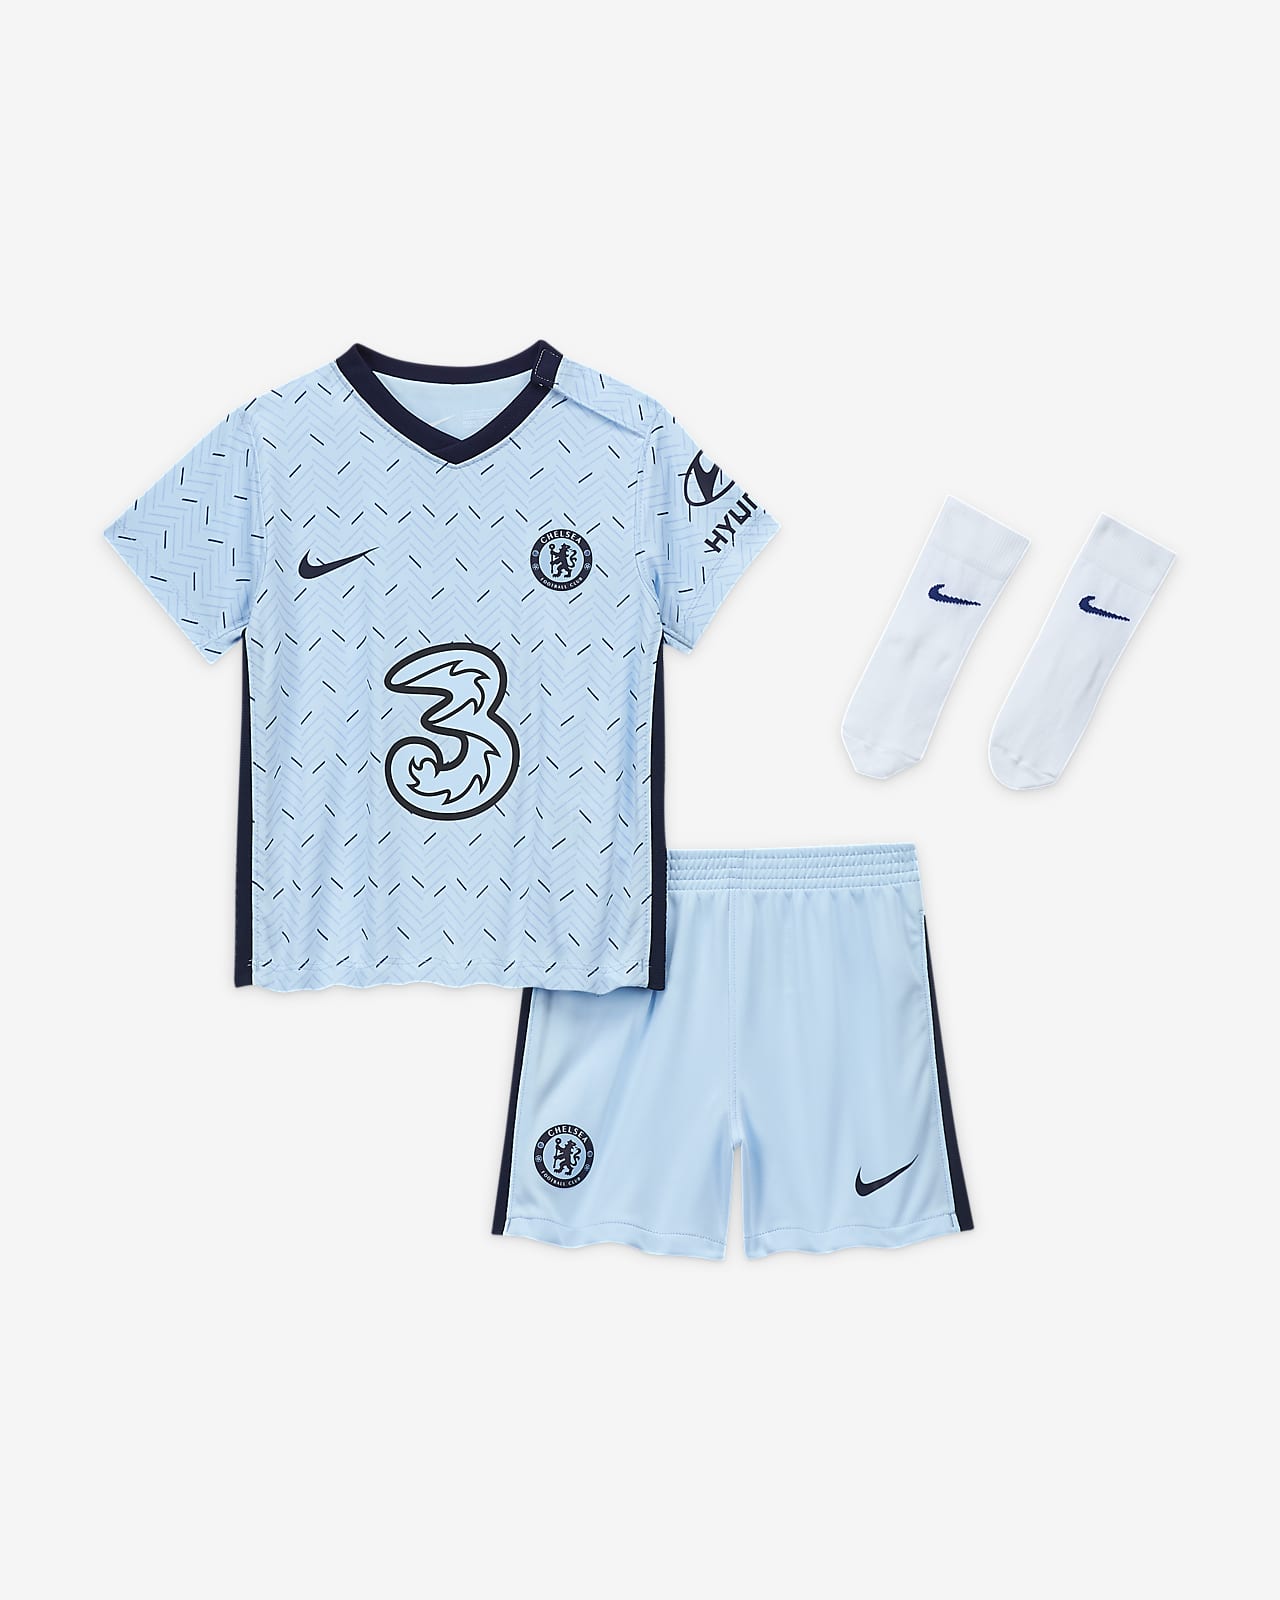 Away Baby and Toddler Football Kit. Nike LU